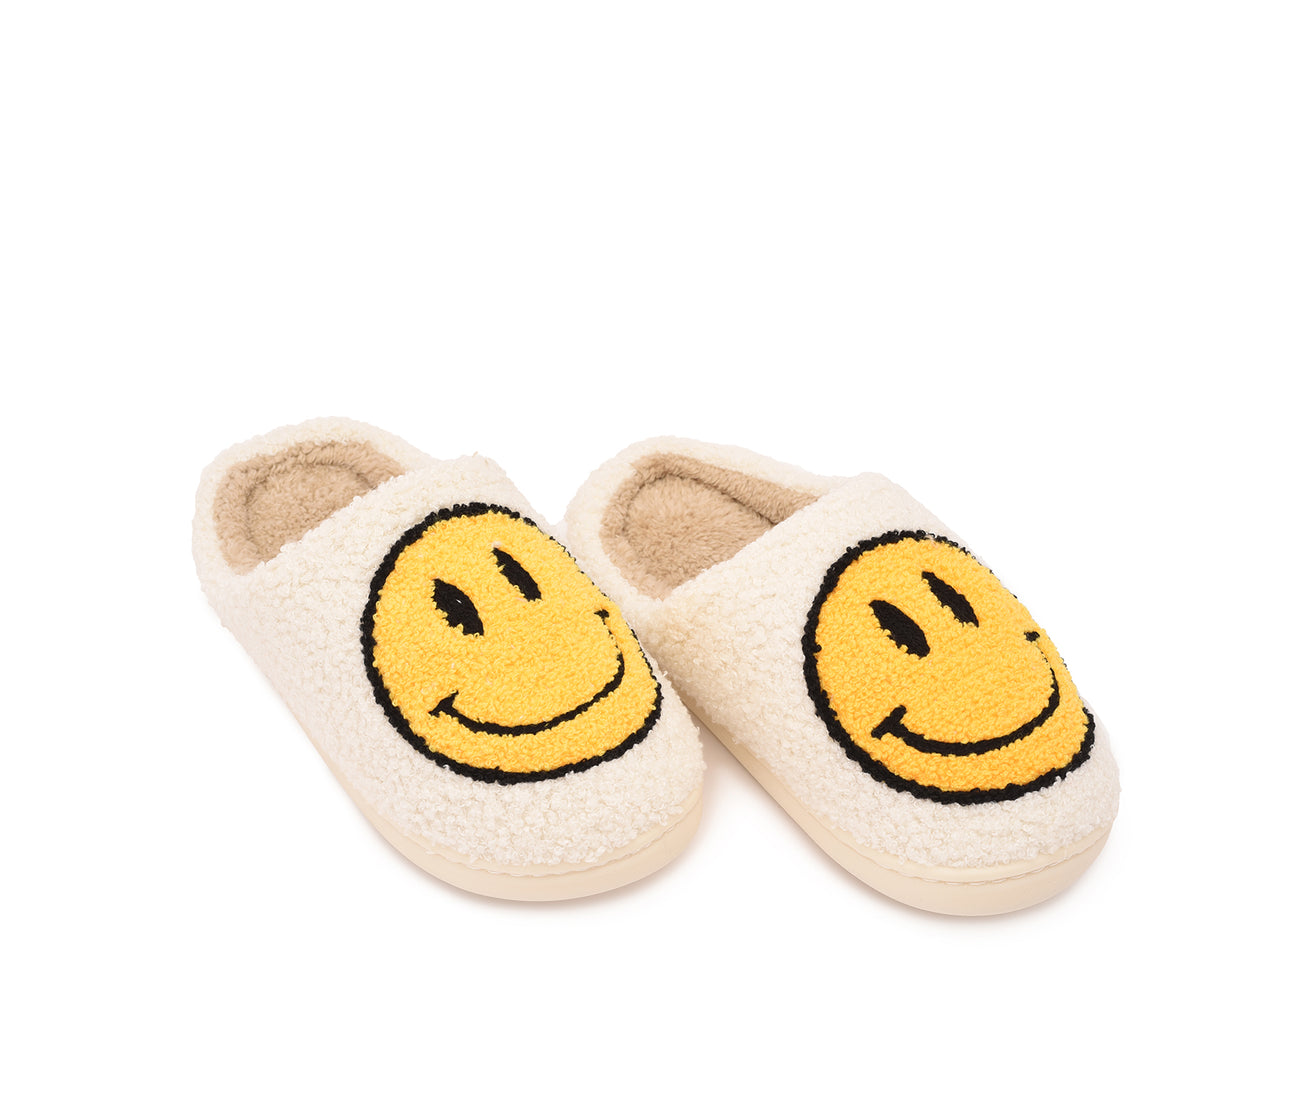 Smiley Slipper - White & Yellow